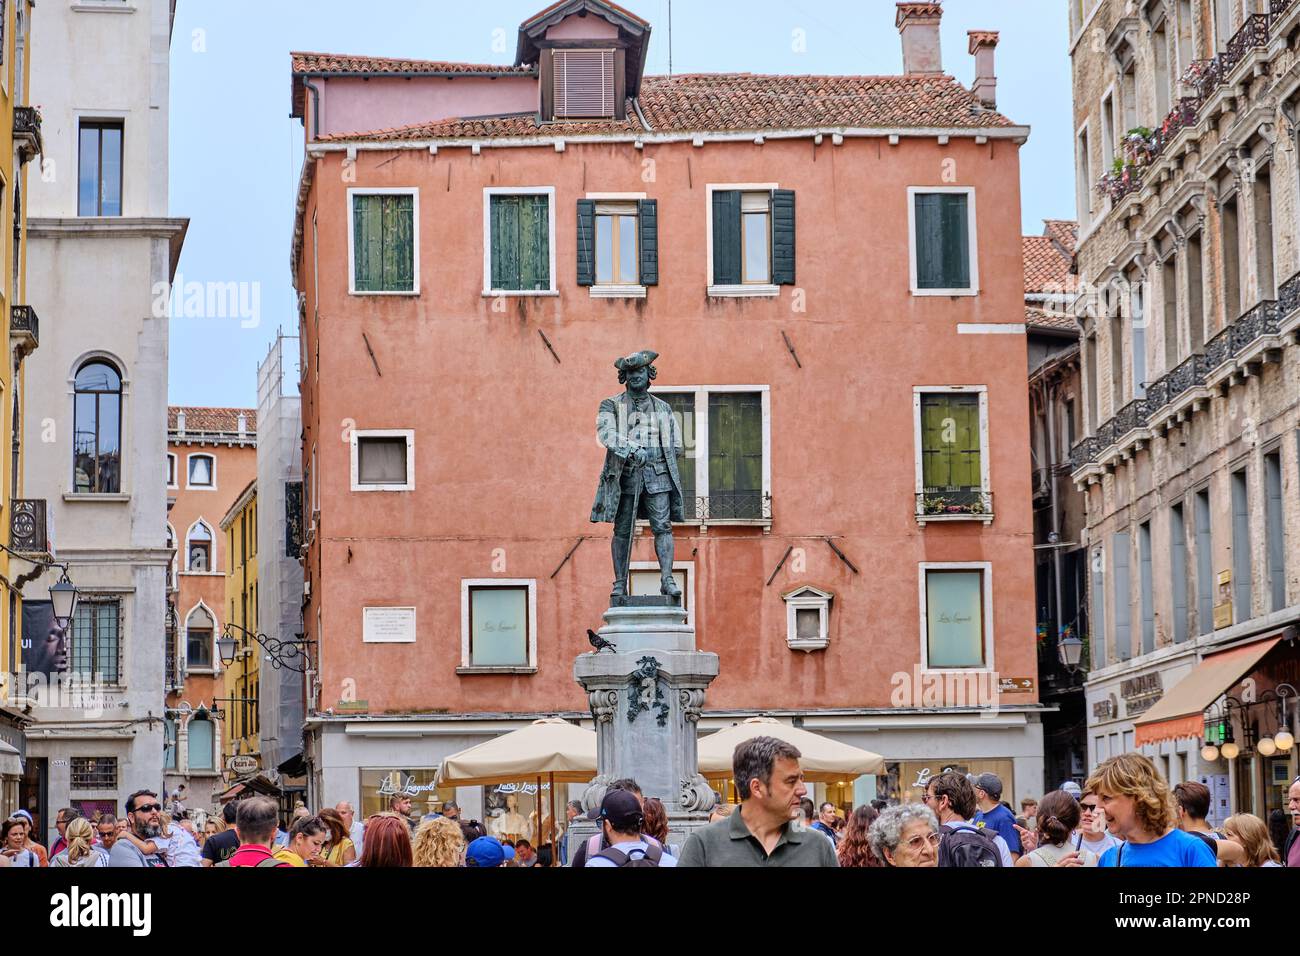 Venecia: Estatua de Casanova en el centro de la ciudad Foto de stock